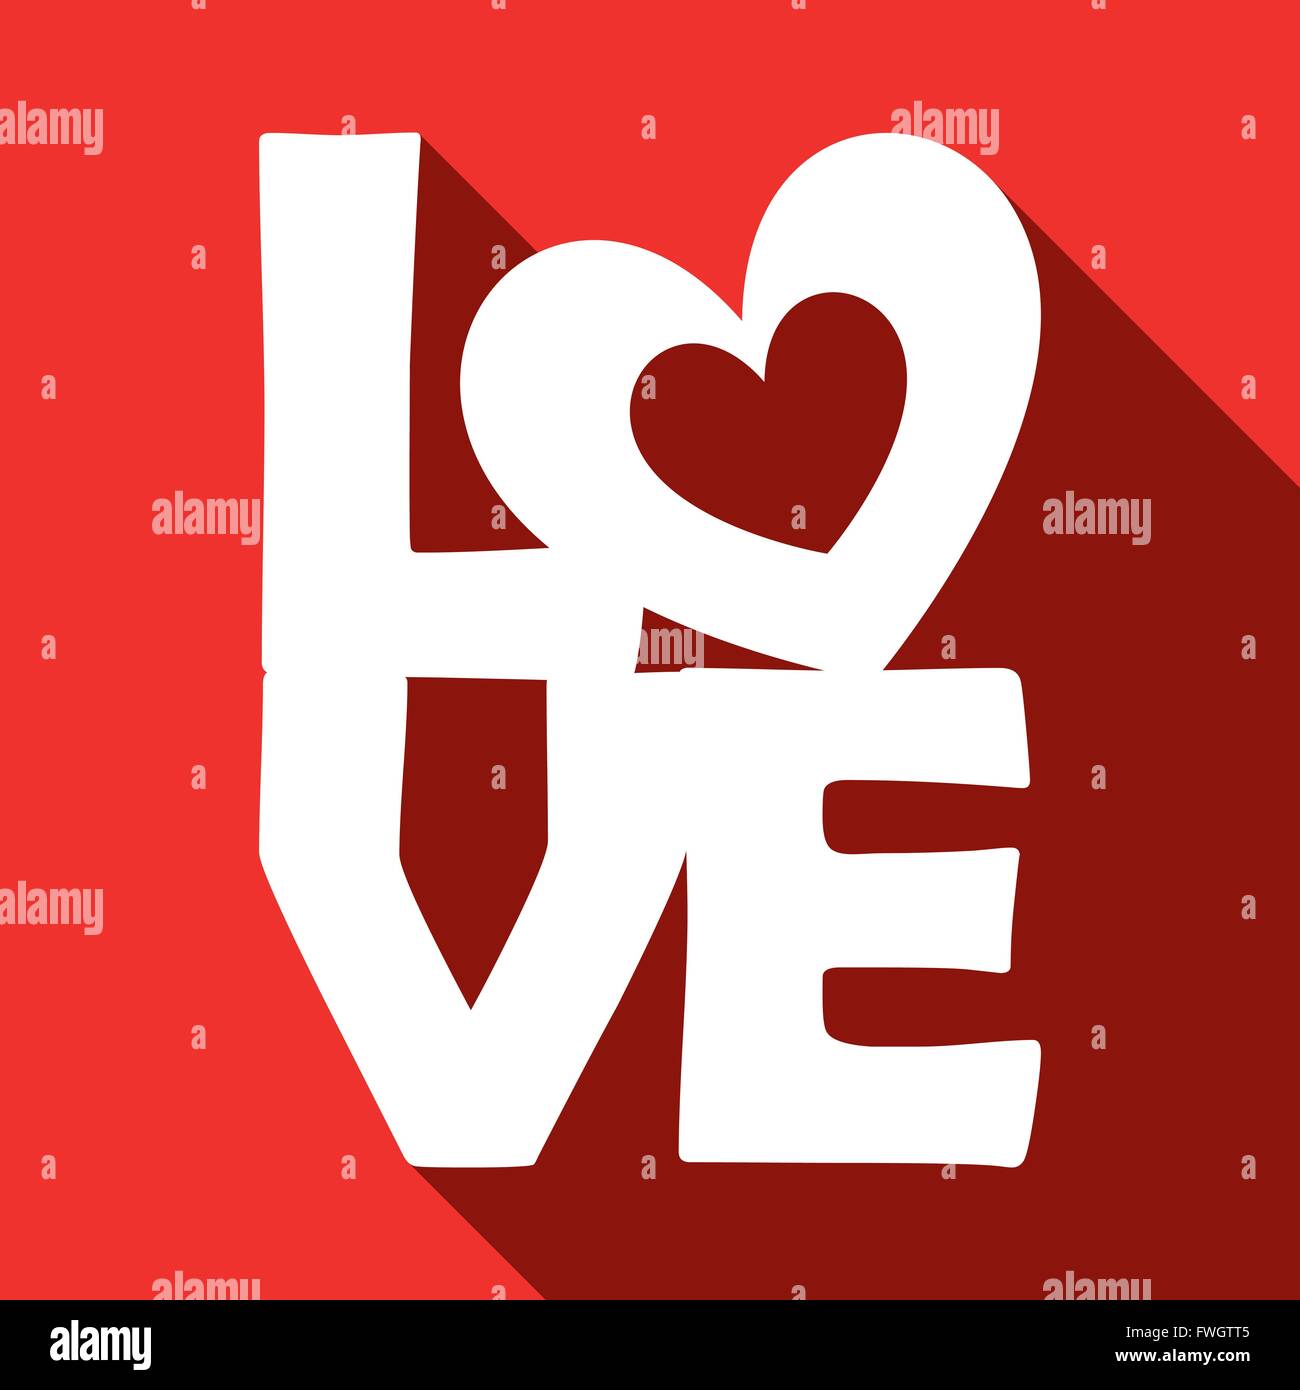 Abbildung-Vektor-Grafik-Herzen, Liebe und Romantik für verschiedene Zwecke im Bereich Web- und Grafikdesign Stock Vektor